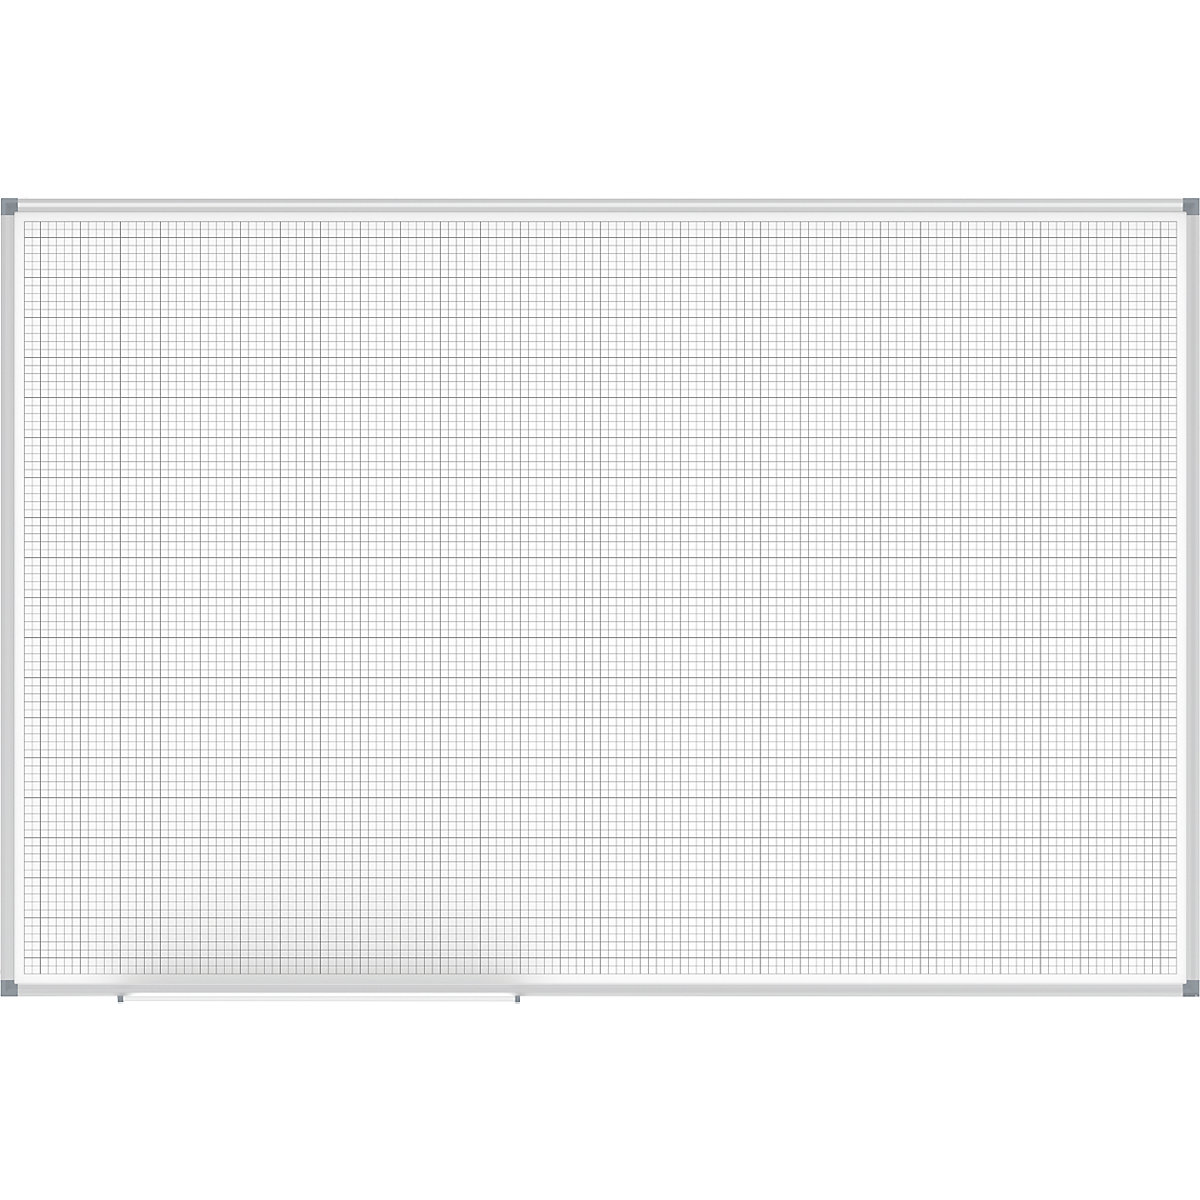 Lavagna a quadretti MAULstandard, bianco – MAUL, reticolo 10 x 10 / 50 x 50 mm, largh. x alt. 1500 x 1000 mm-3